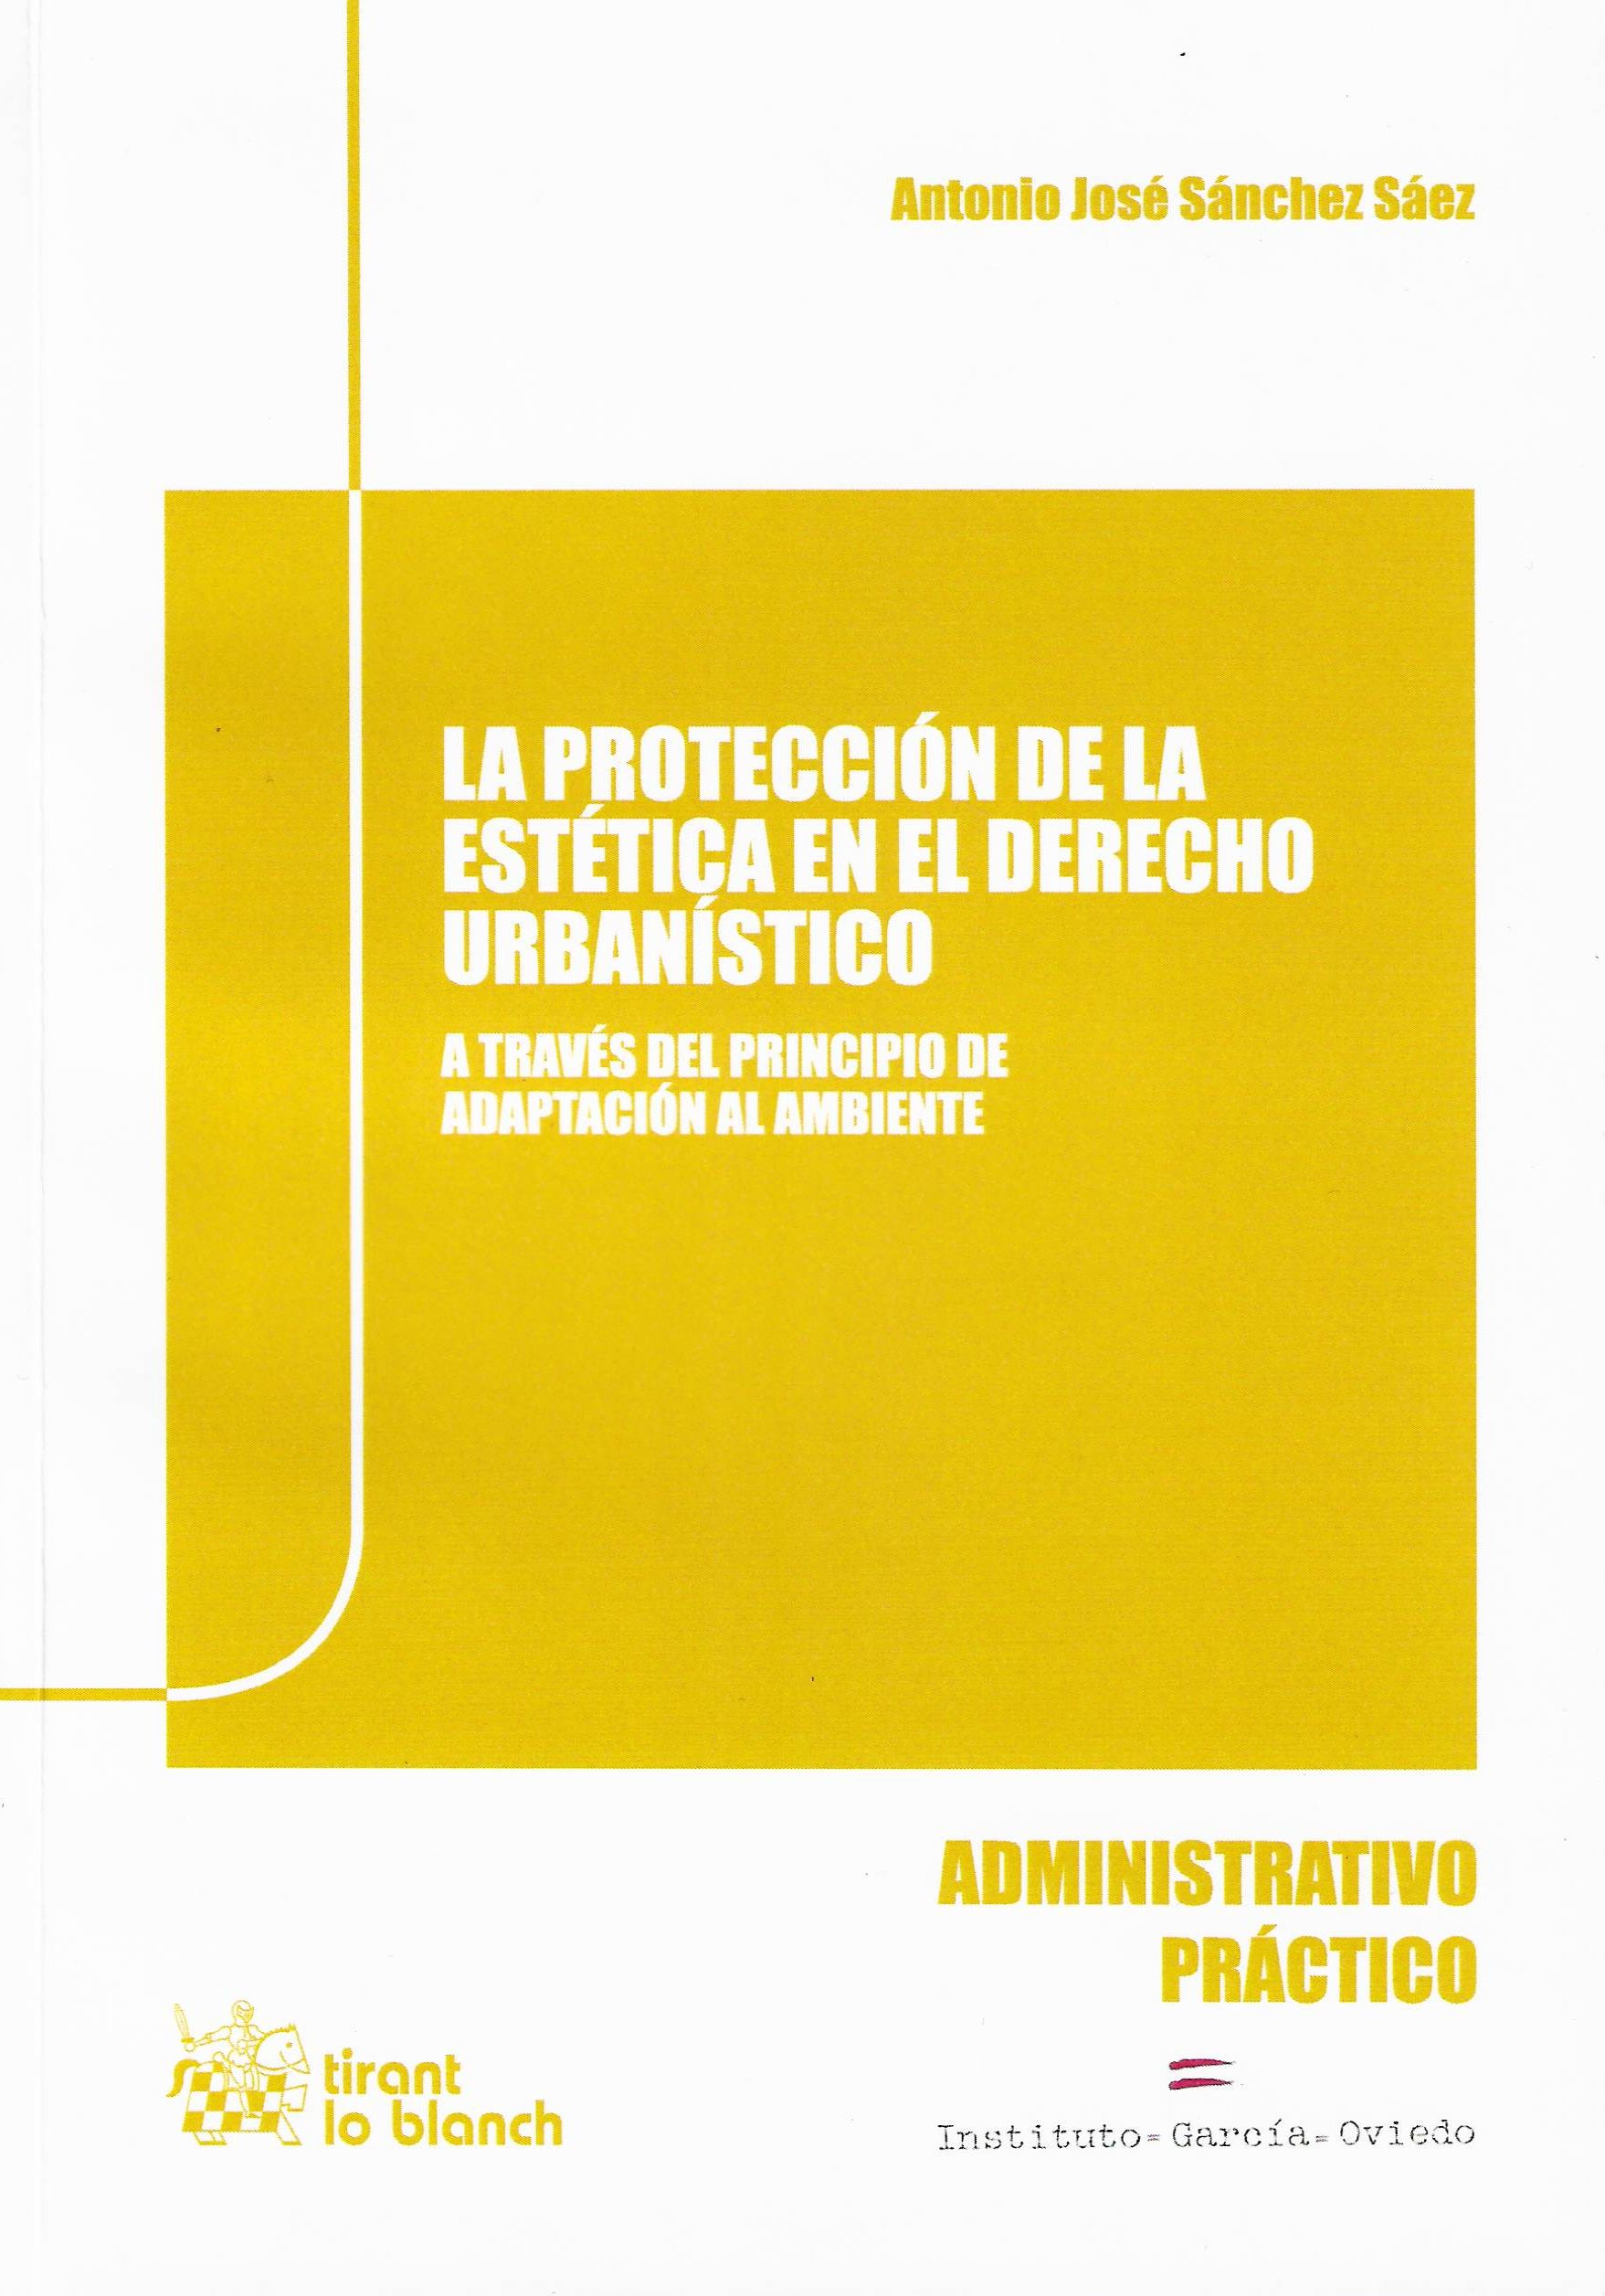 Imagen de portada del libro La protección de la estética en el derecho urbanístico a través del principio de adaptación al ambiente